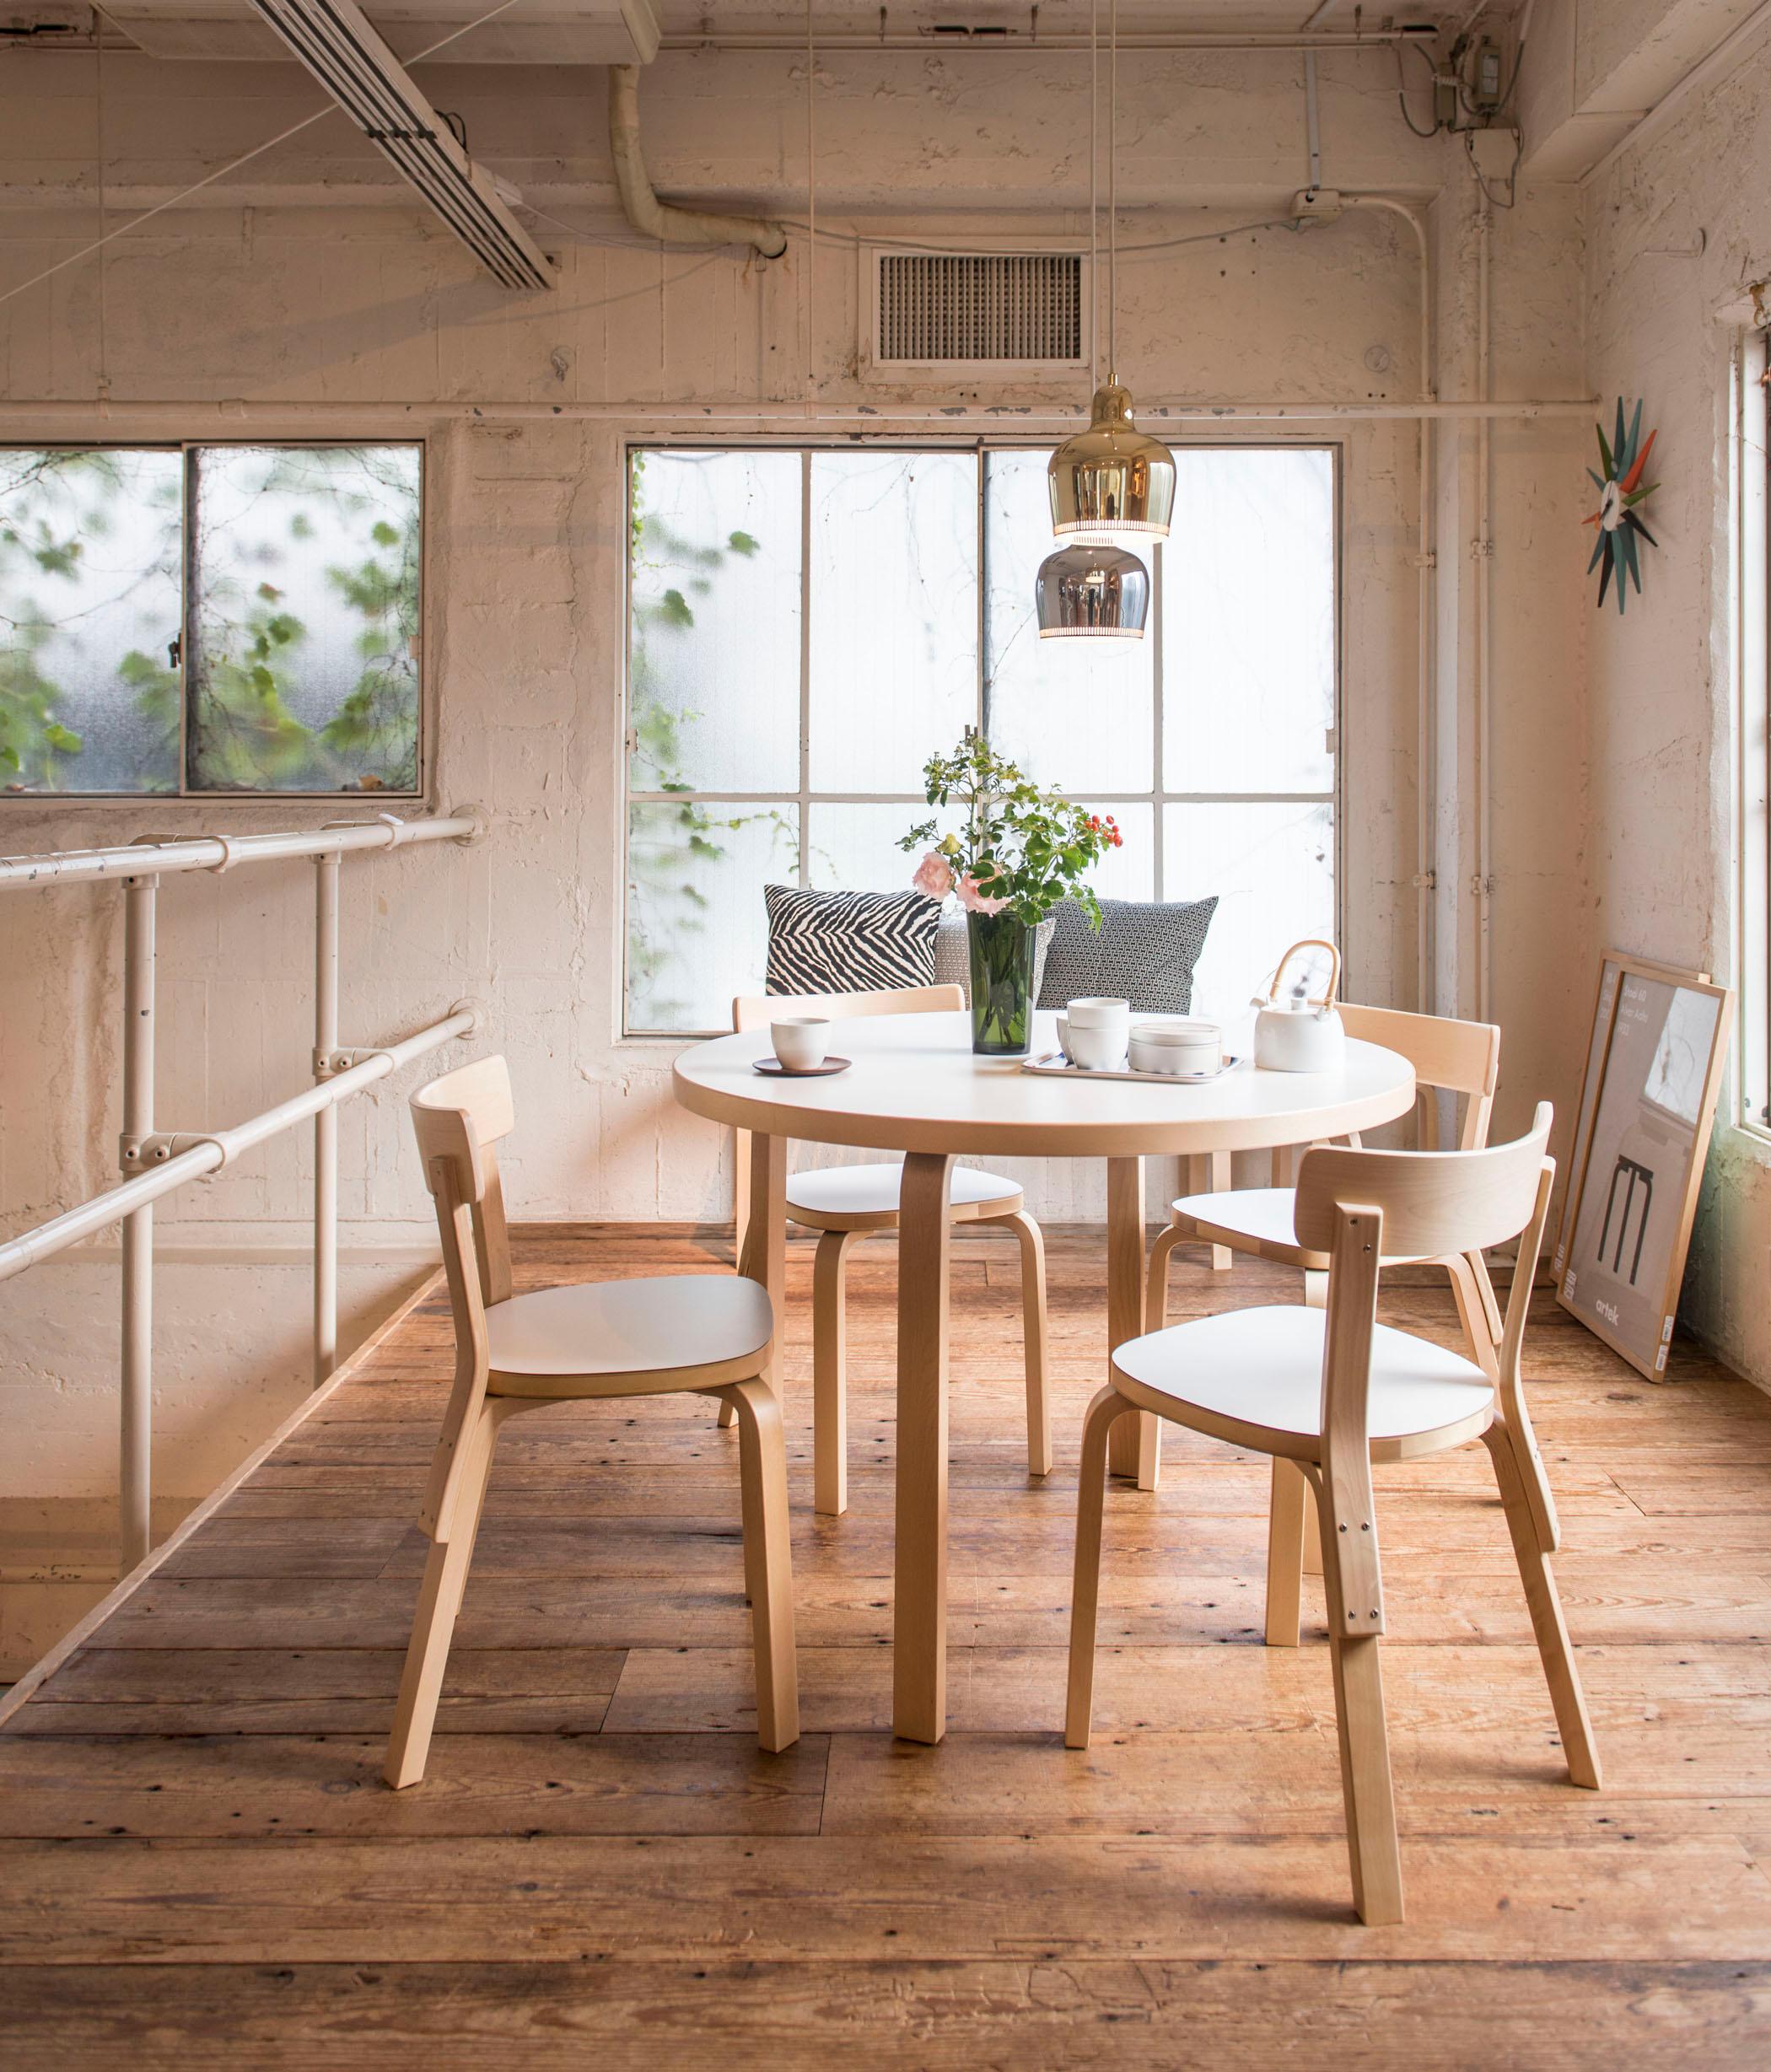 Schlichte Sitzgruppe aus Holz #esstisch #shabbychic #hängeleuchte #industriedesign #runderesstisch ©Artek